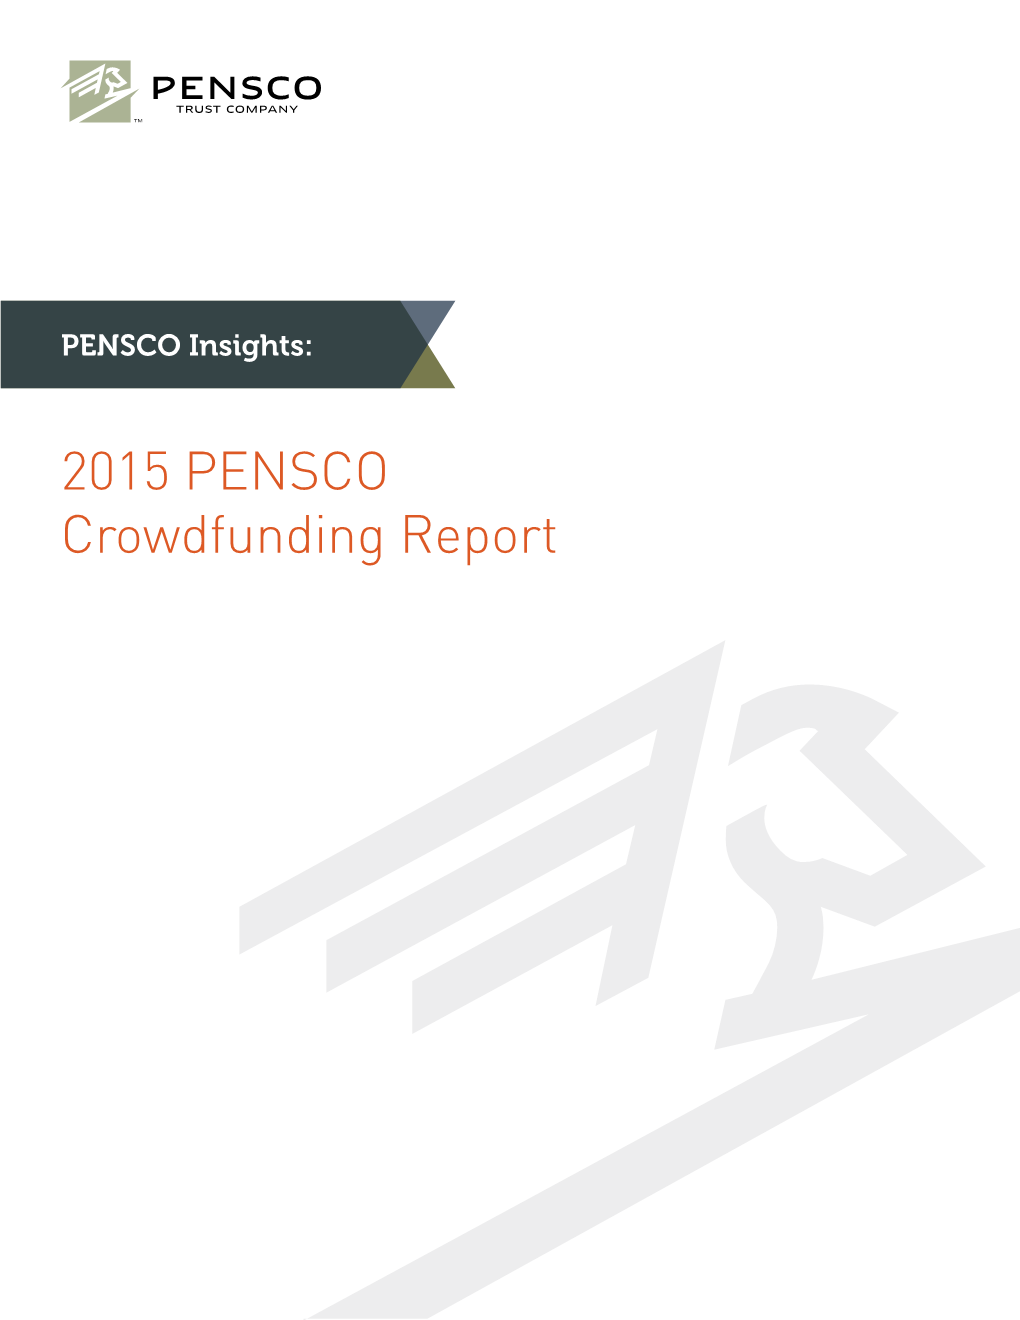 2015 PENSCO Crowdfunding Report Update: June 2015